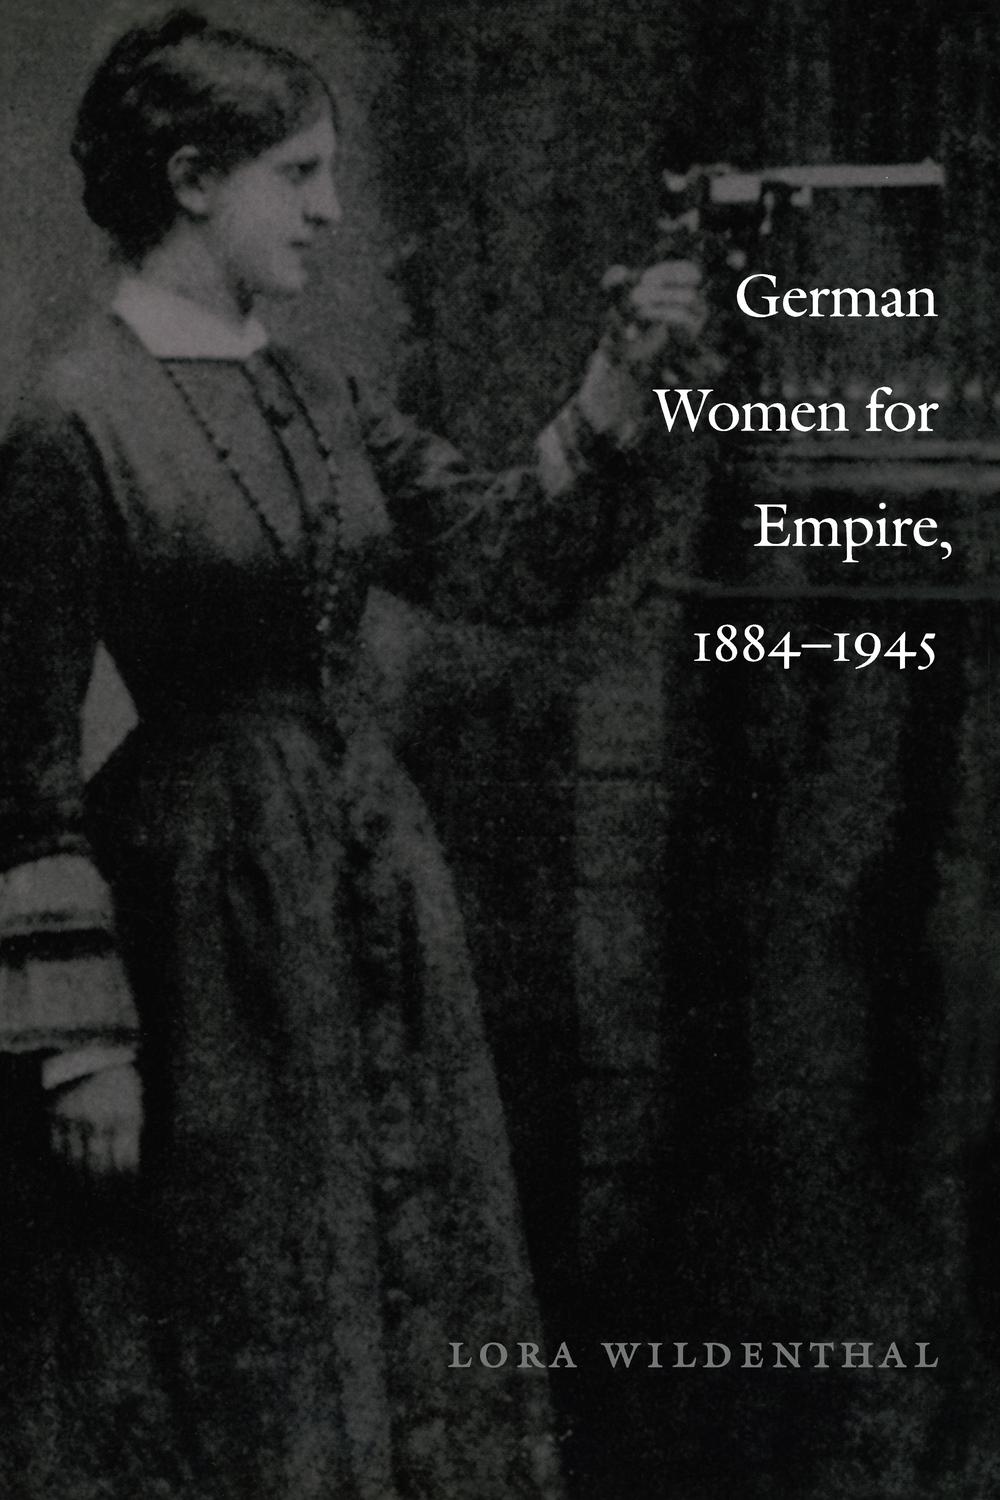 German Women for Empire, 1884-1945 - Lora Wildenthal, Julia Adams, George Steinmetz